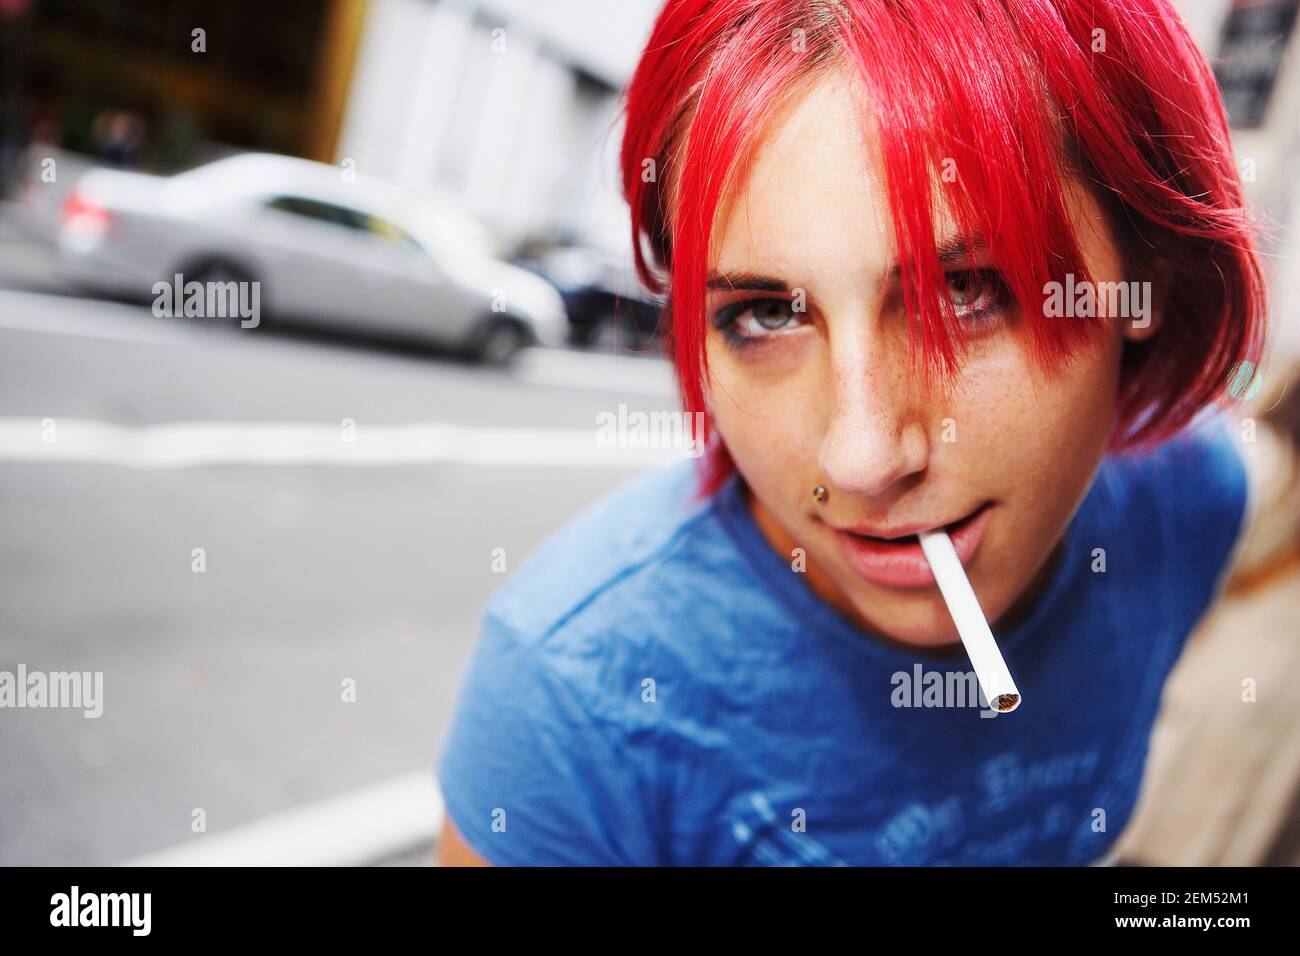 Porträt einer jungen Frau eine Zigarette rauchend Stockfoto